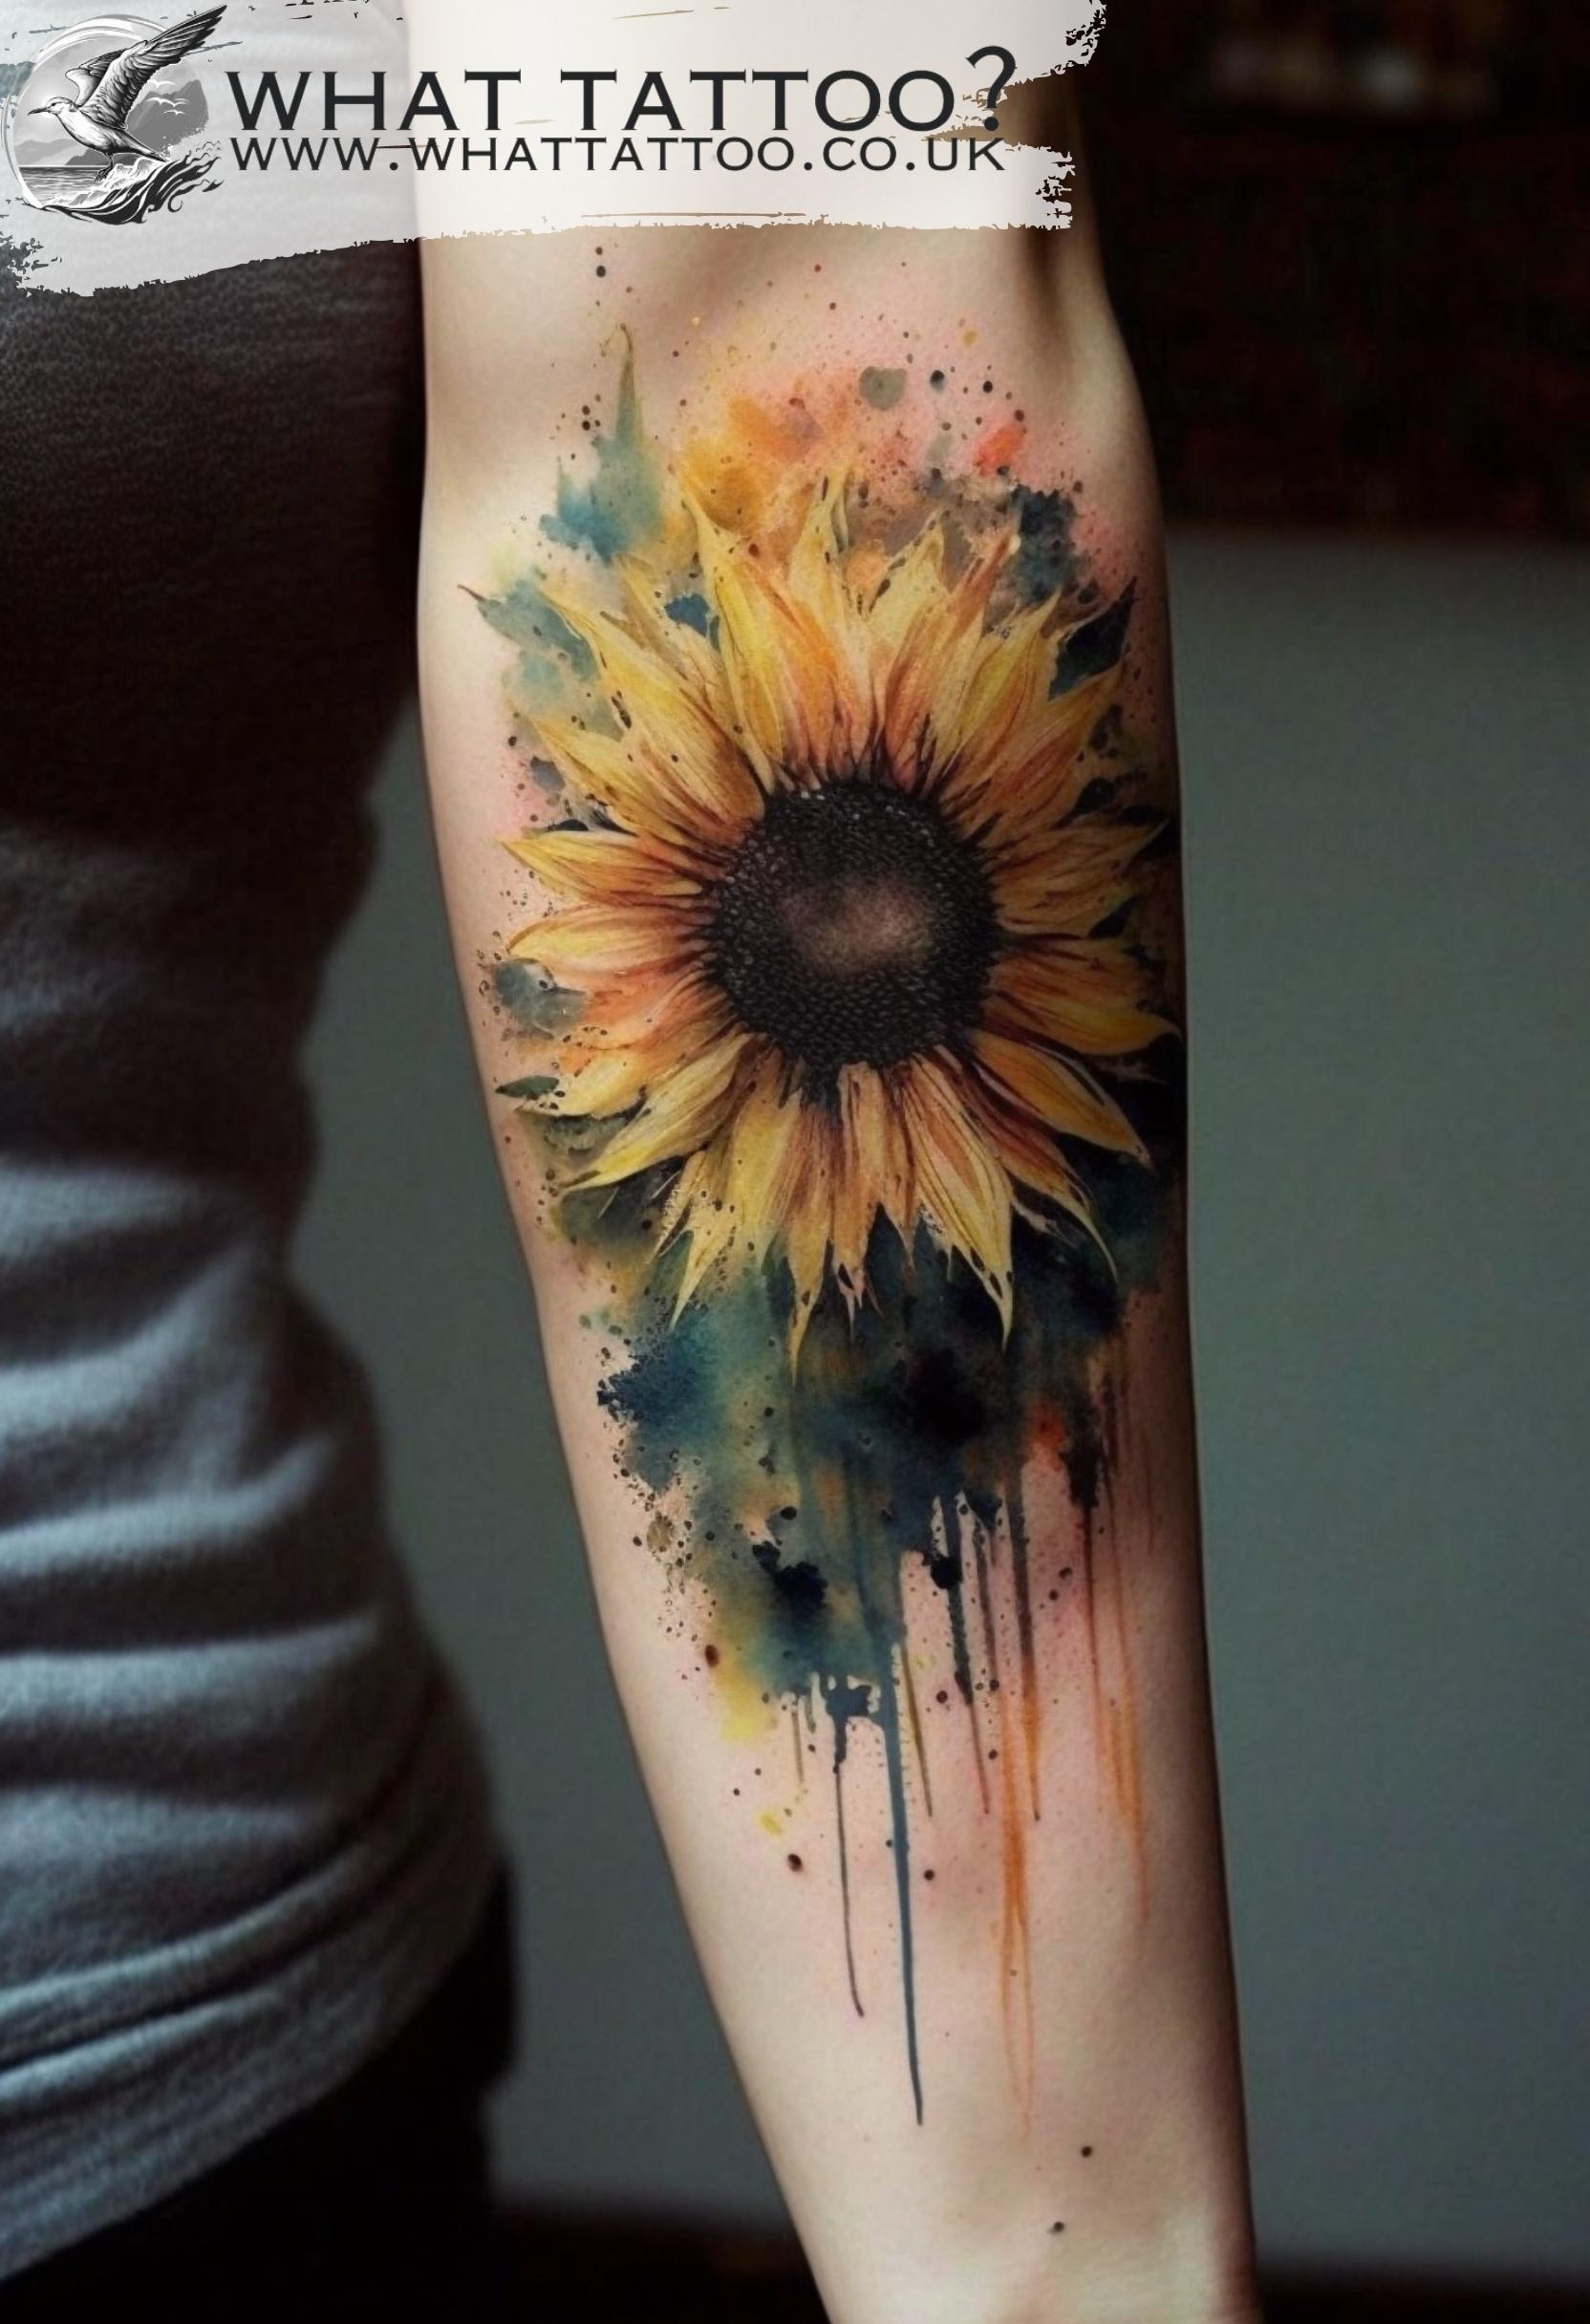 THE SUN oracle tarot deck sunflower tattoo illustration